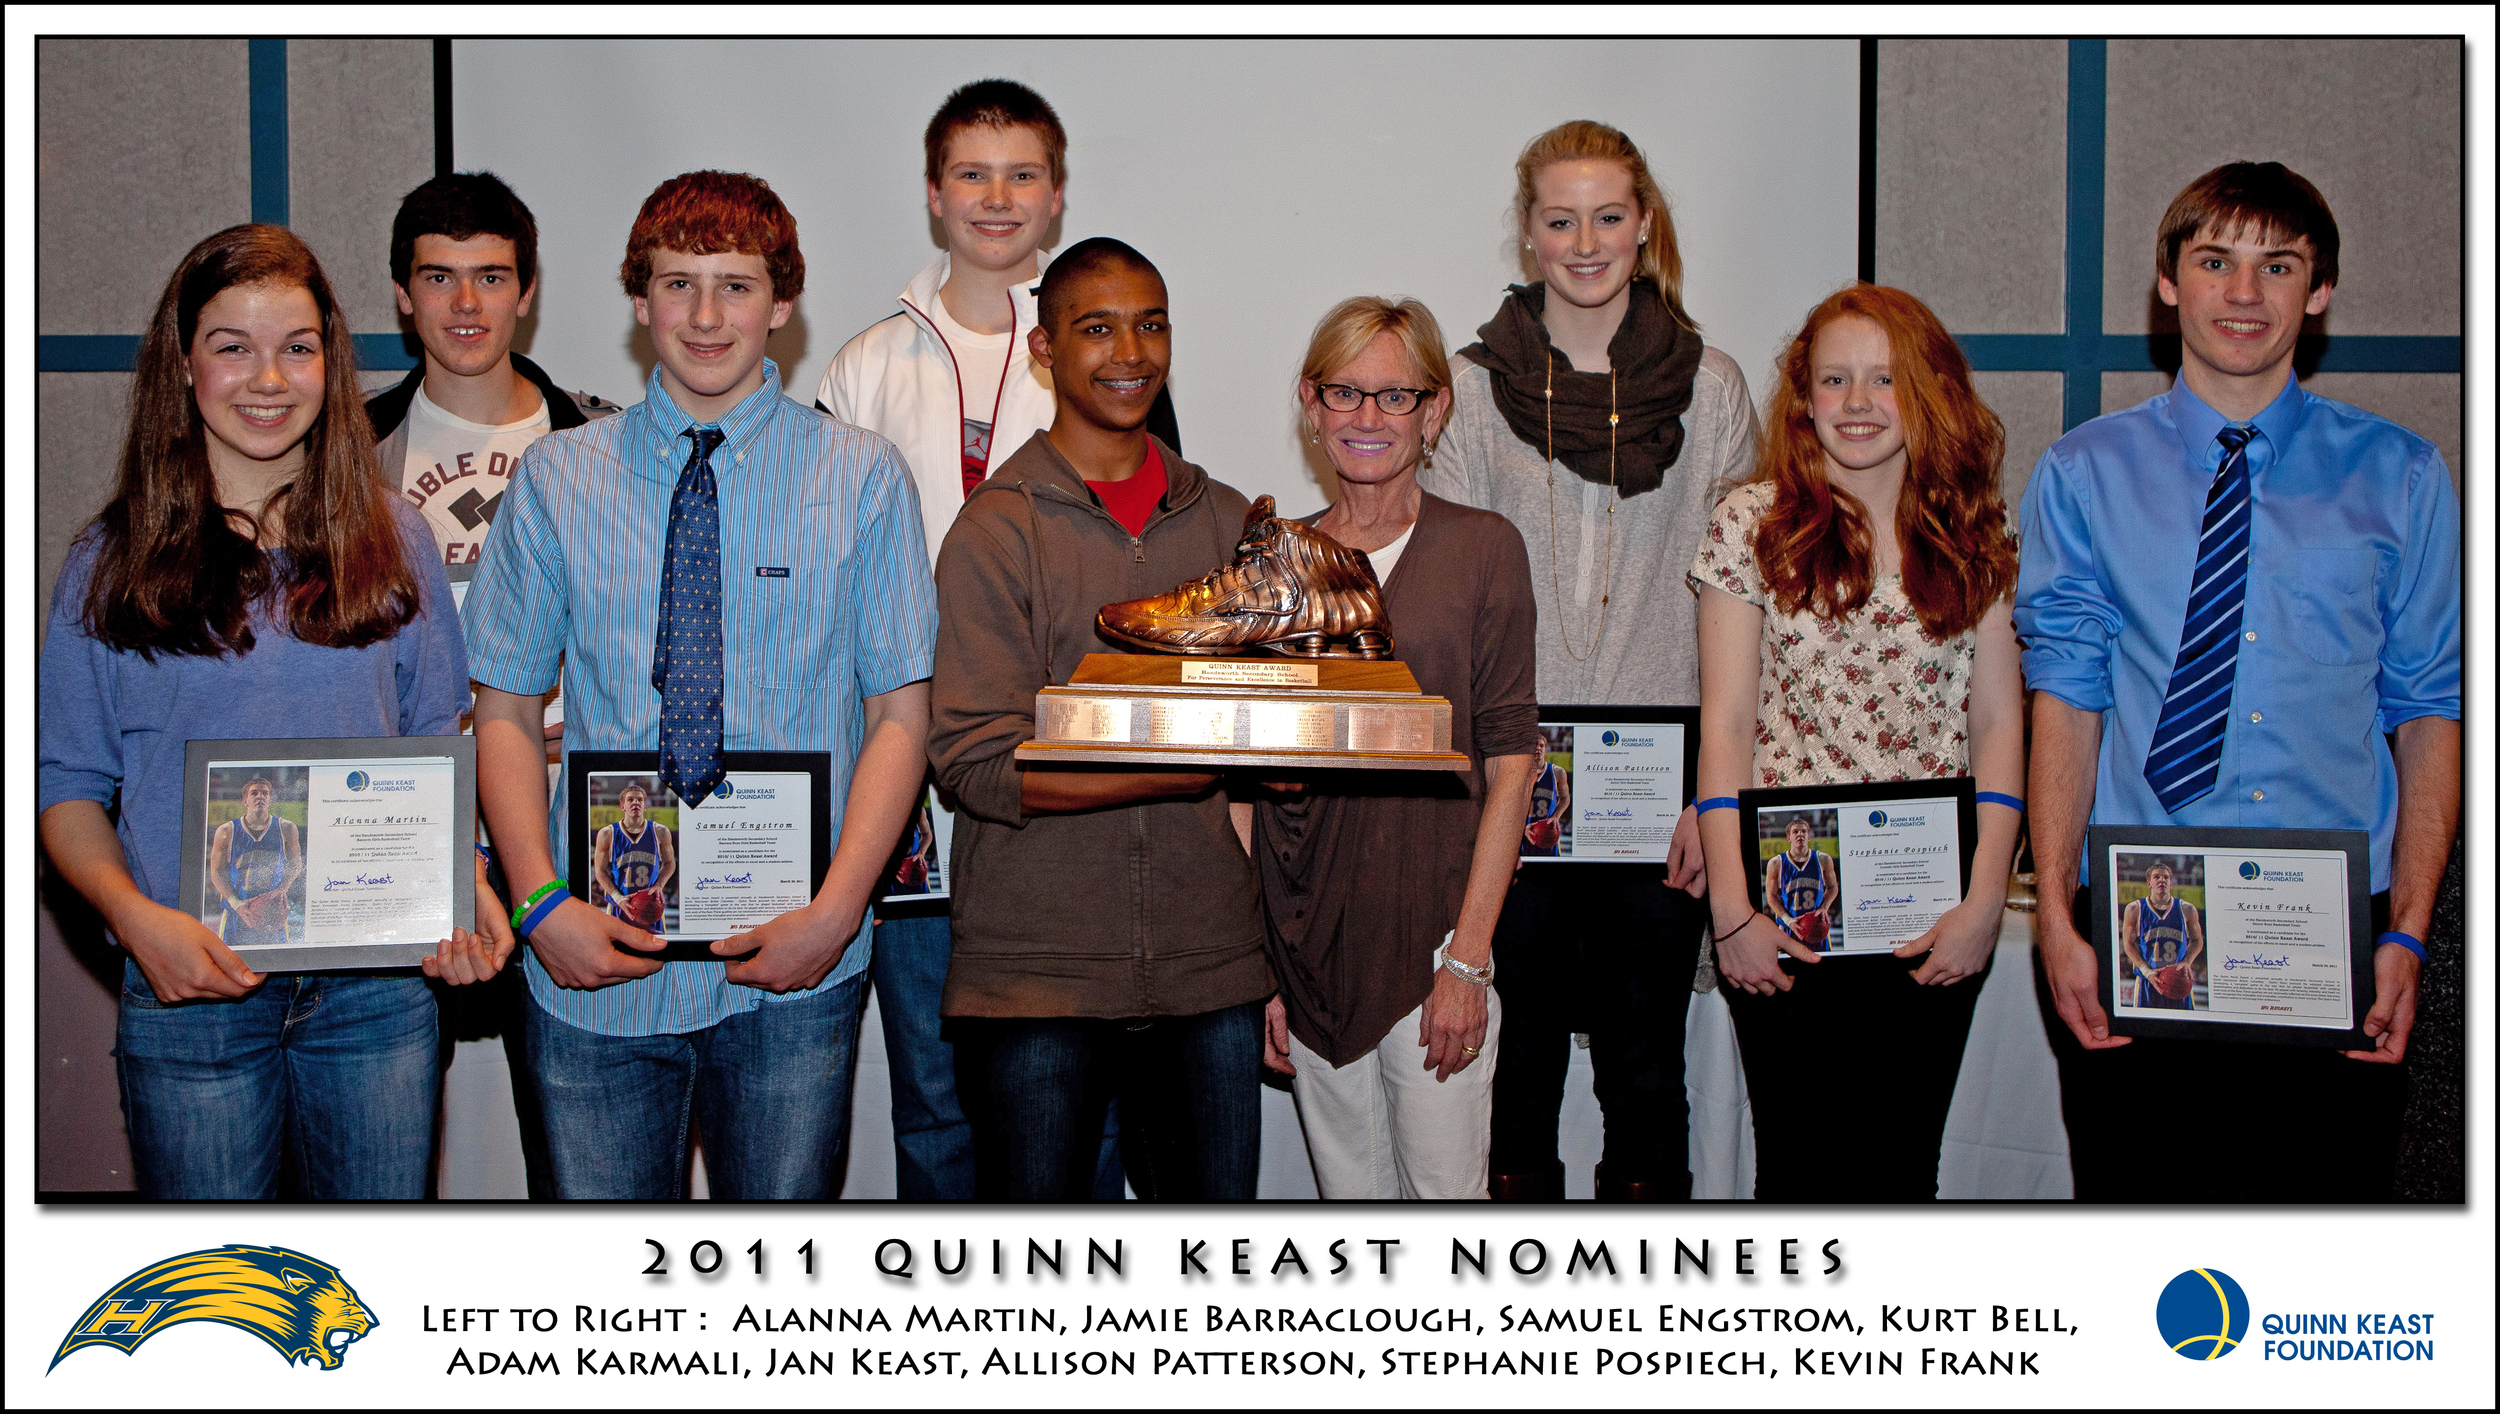 qk nominees 2011.jpg